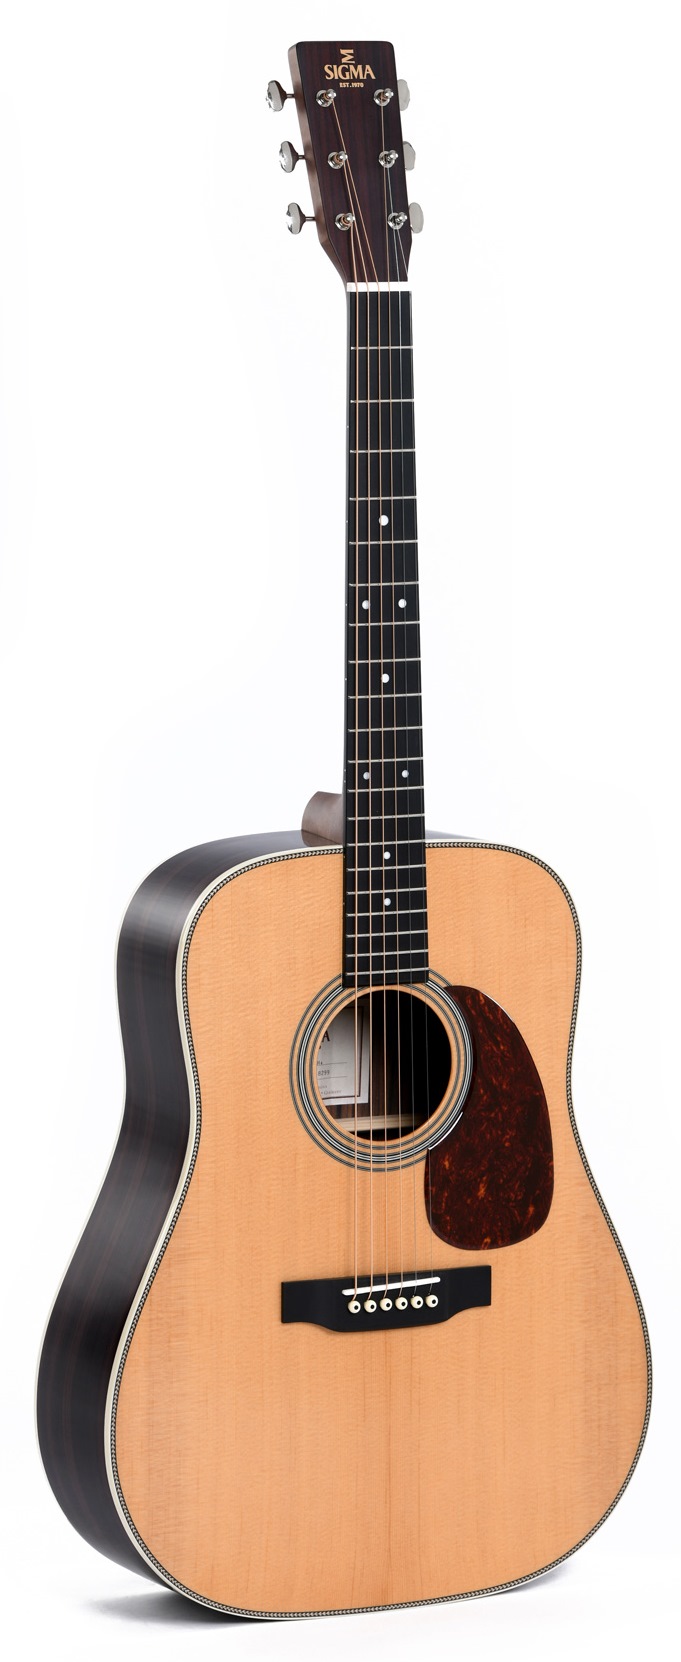 Акустические гитары Sigma DT-28H акустические гитары mirra wg 4111 bk